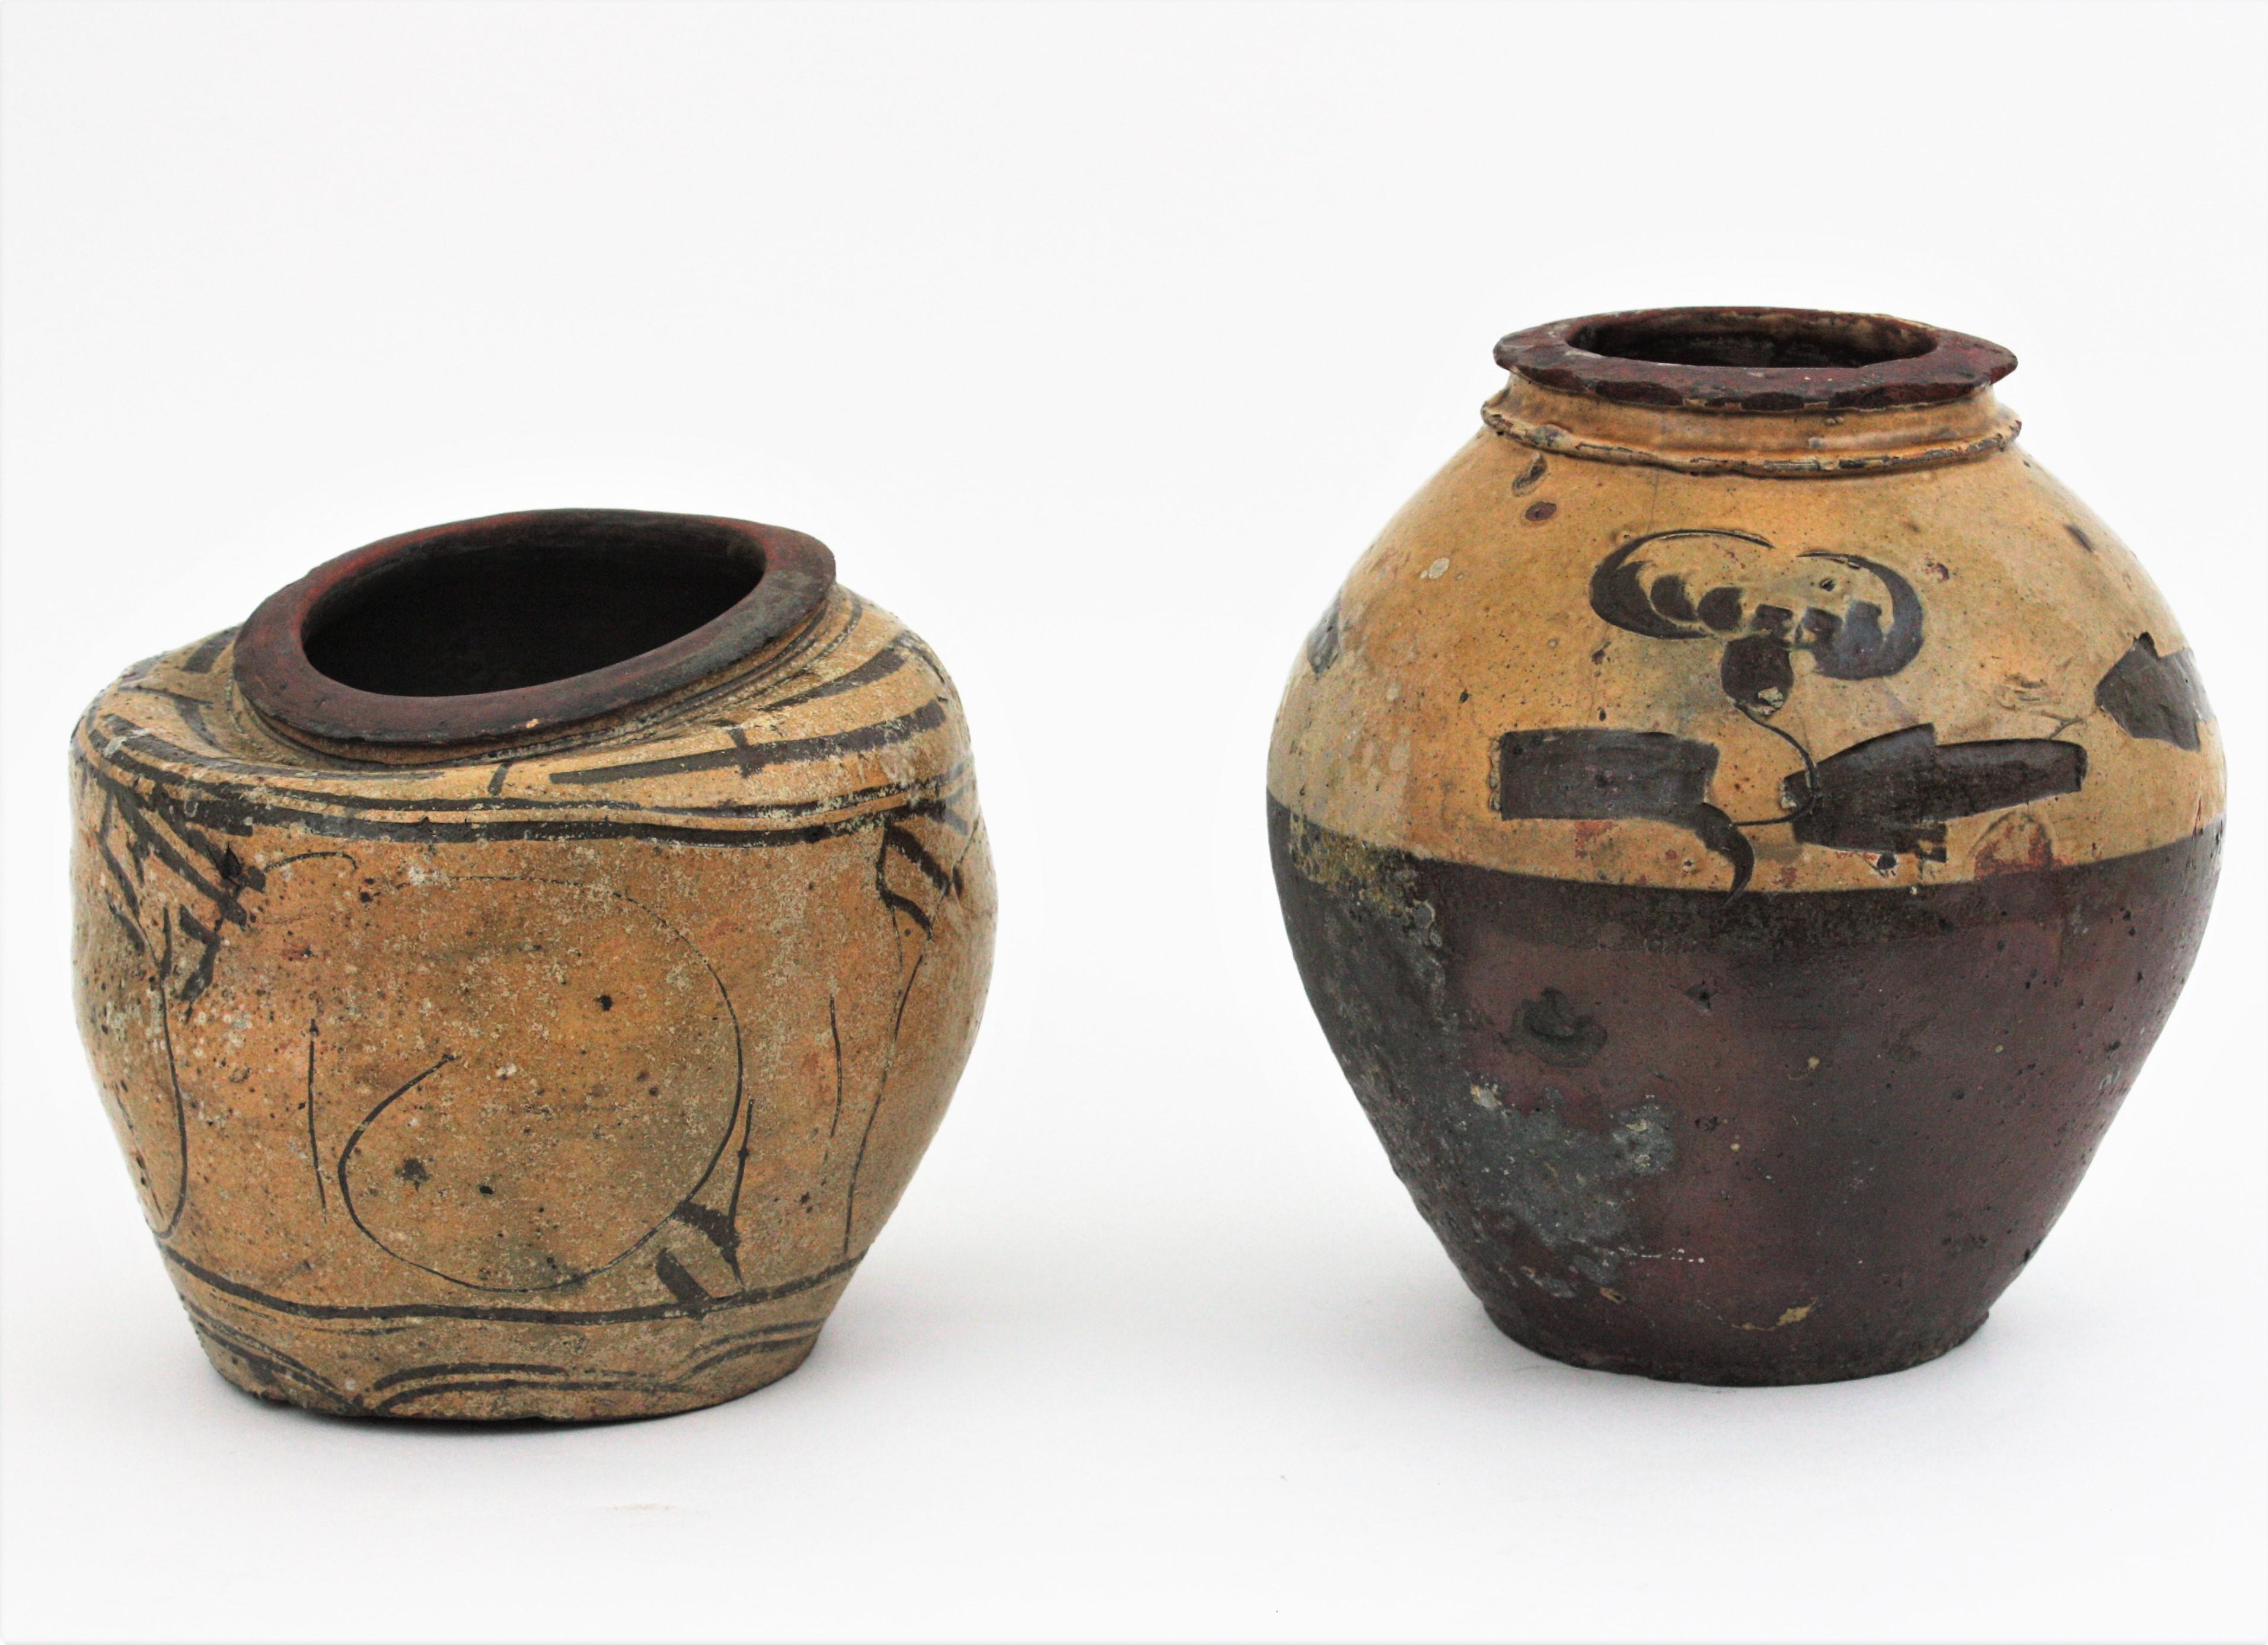 Paire de pots ou de récipients en terre cuite à forme d'urne et à décorations vernissées, Chine, années 1930.
Pots à vin ou pots de conservation rustiques en terre cuite, faits à la main.
La plus haute est recouverte de céramique émaillée de couleur